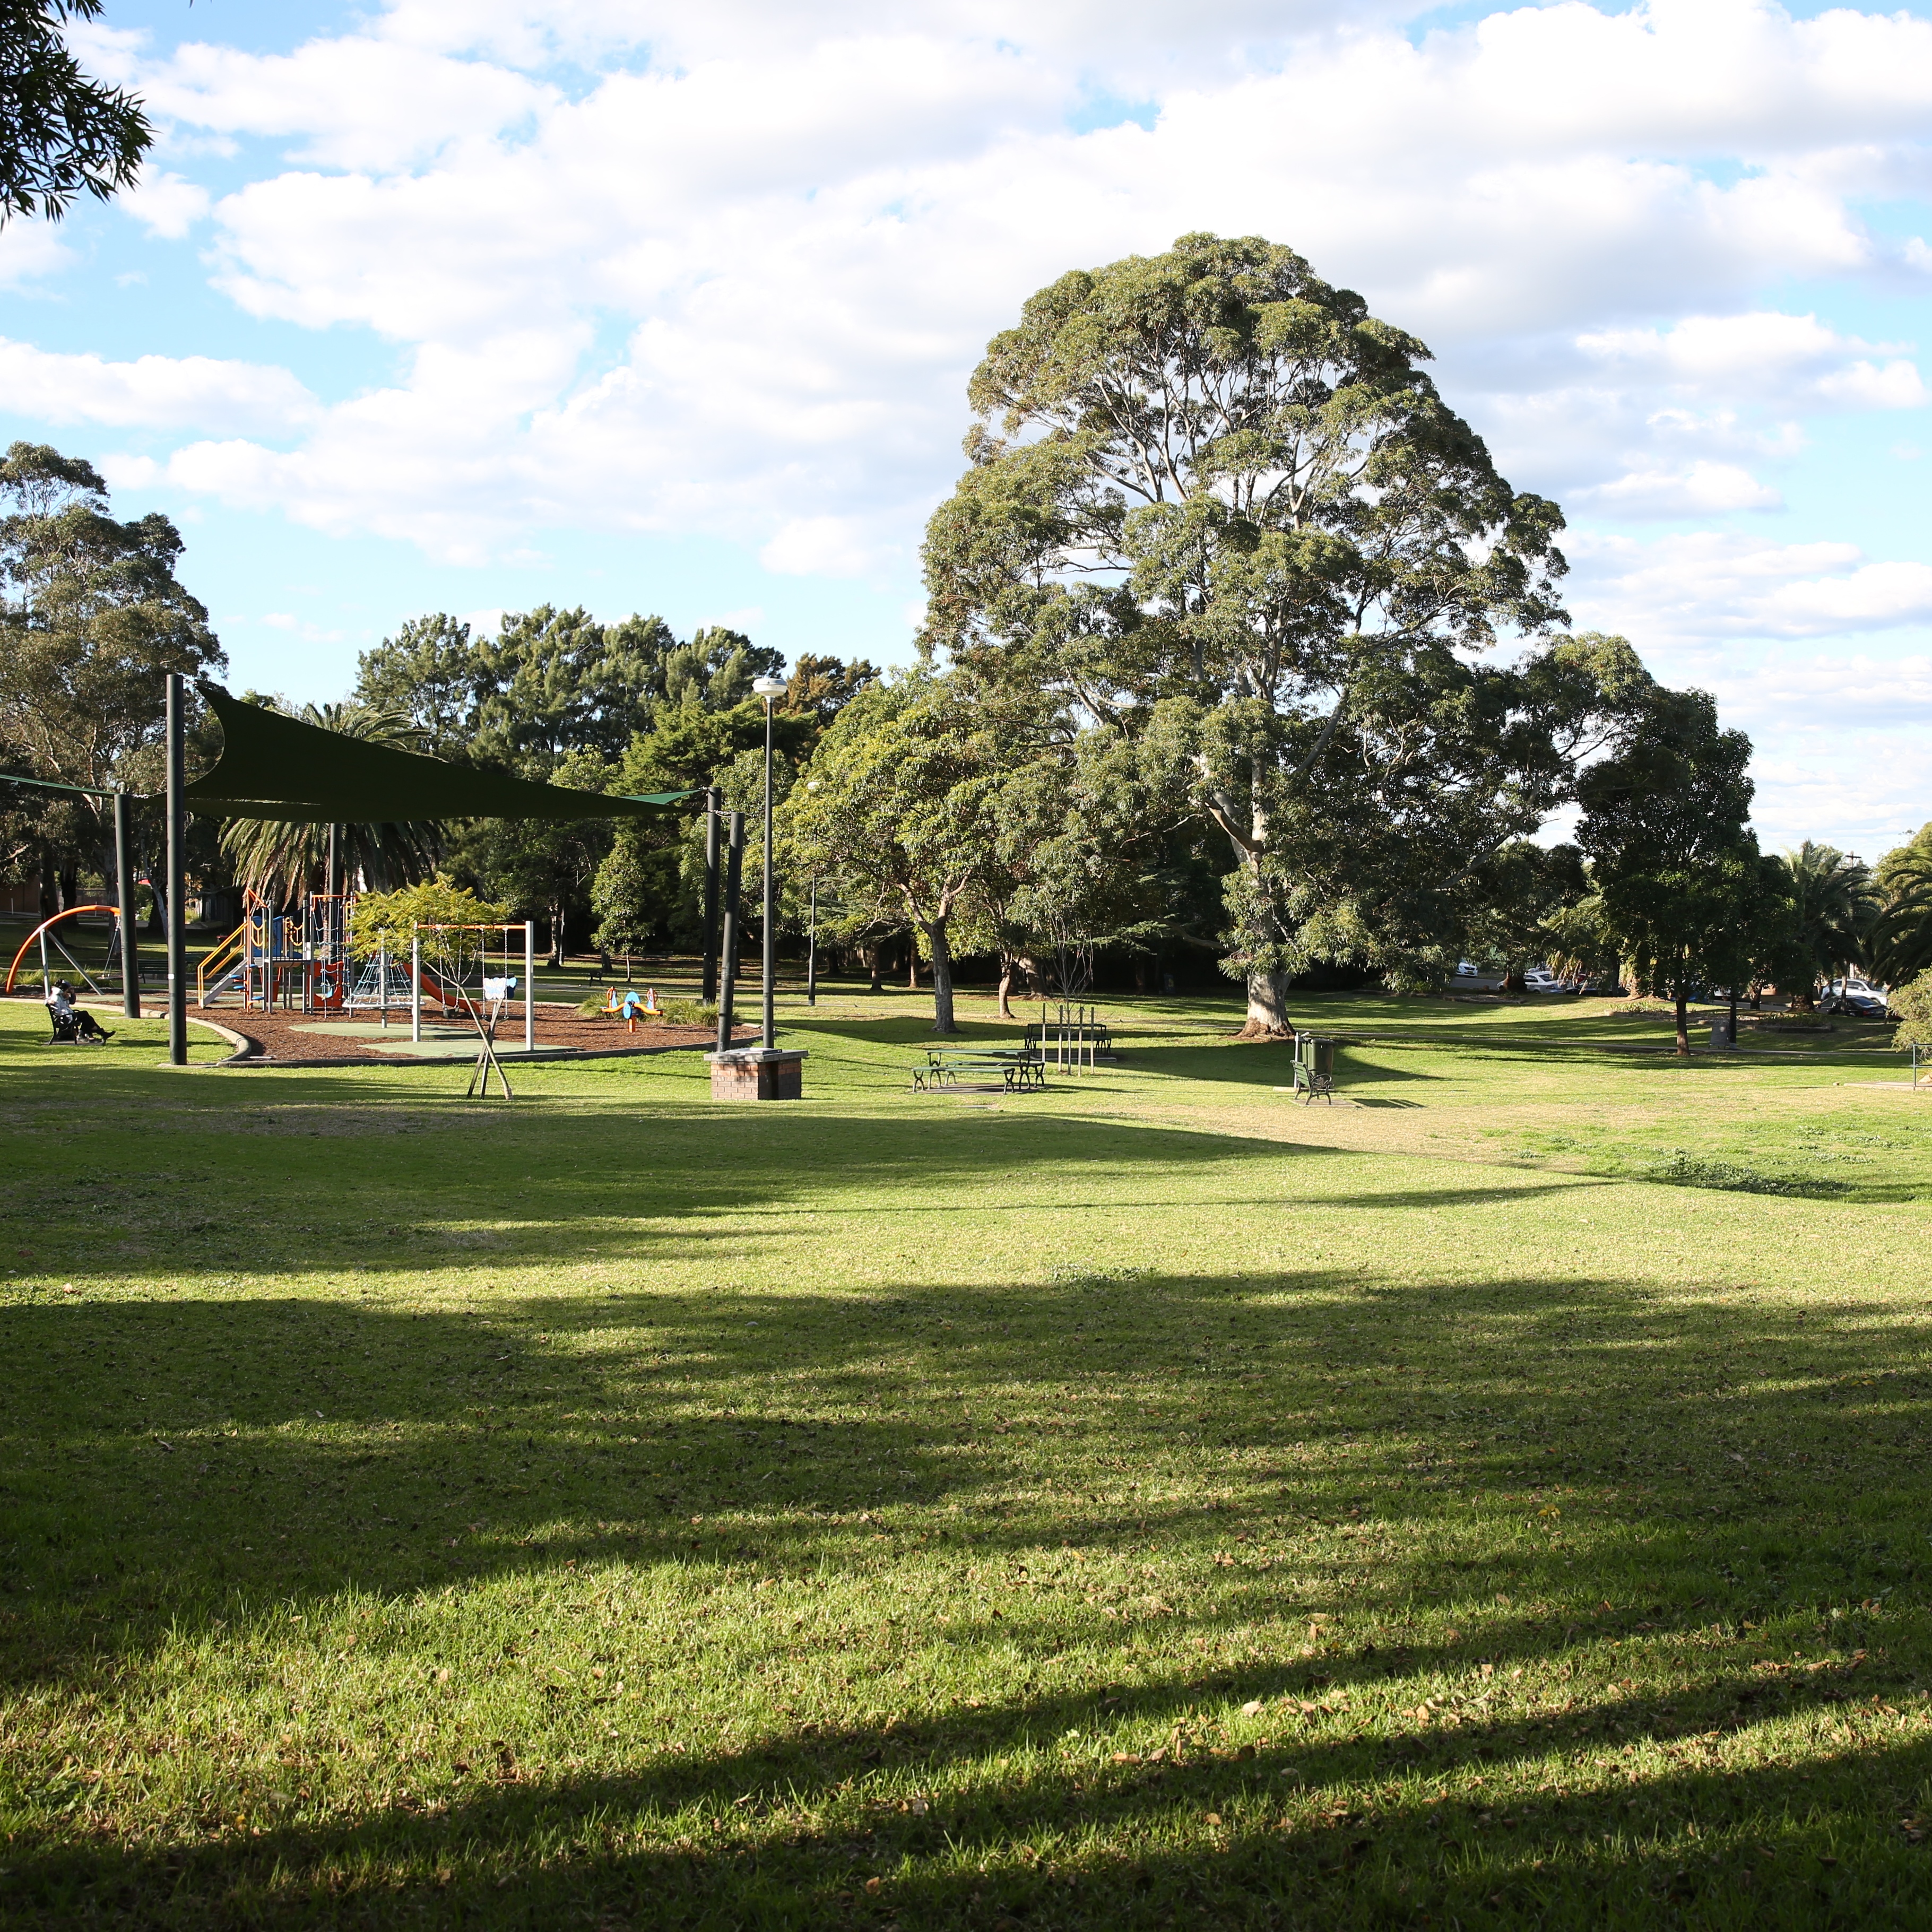  Morton Park view